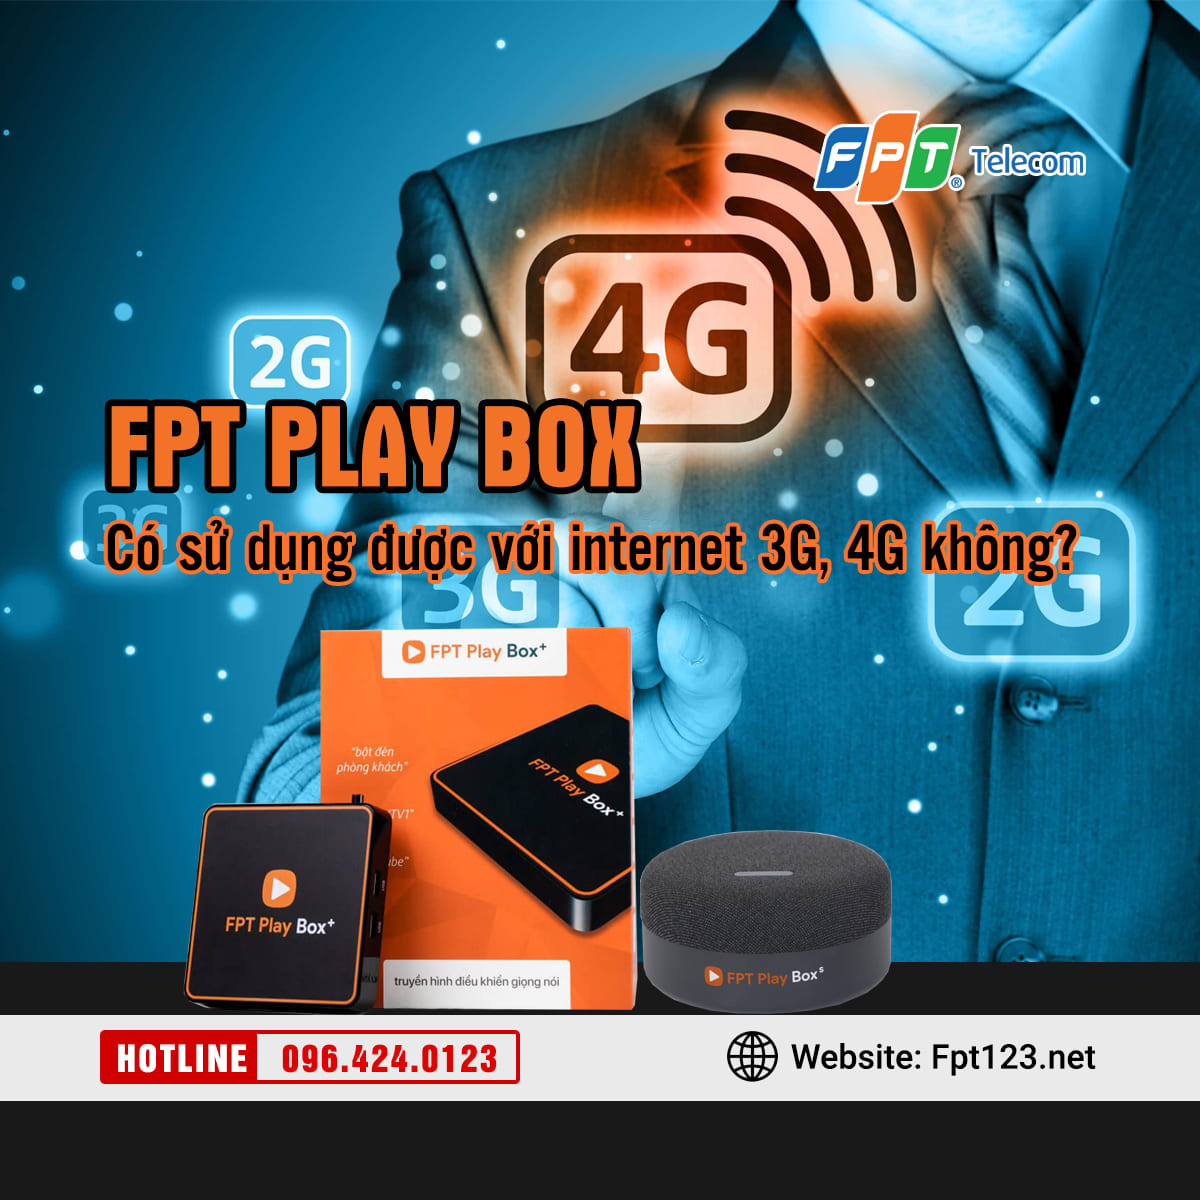 FPT Play Box có sử dụng được với internet 3G, 4G không?